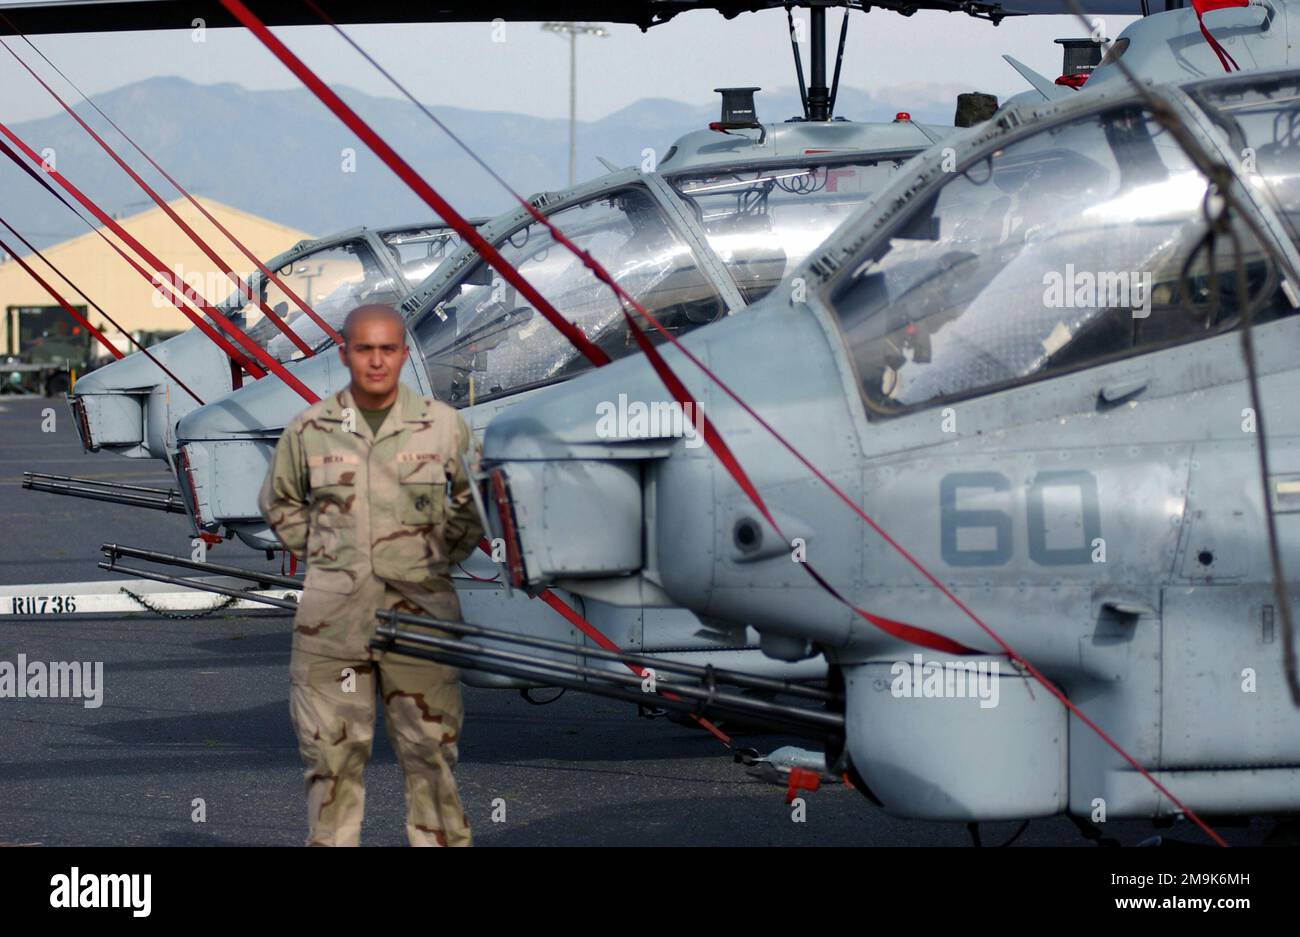 US Marine Corps (USMC) Lance Corporal (LCPL) Greg Rivera assegnato a Marine Light Attack Helicopter Squadron 169 (HMLA-169), si trova di fronte a una fila di USMC AH-1W Super Cobra Helicopters parcheggiato sulla linea di volo presso la base della riserva aerea di marzo (ARB), California, durante l'operazione CHE PERCORRE LA LIBERTÀ. (Immagine substandard). Soggetto operativo/Serie: ENDURING FREEDOM base: March Air Reserve base Stato: California (CA) Paese: Stati Uniti d'America (USA) Foto Stock